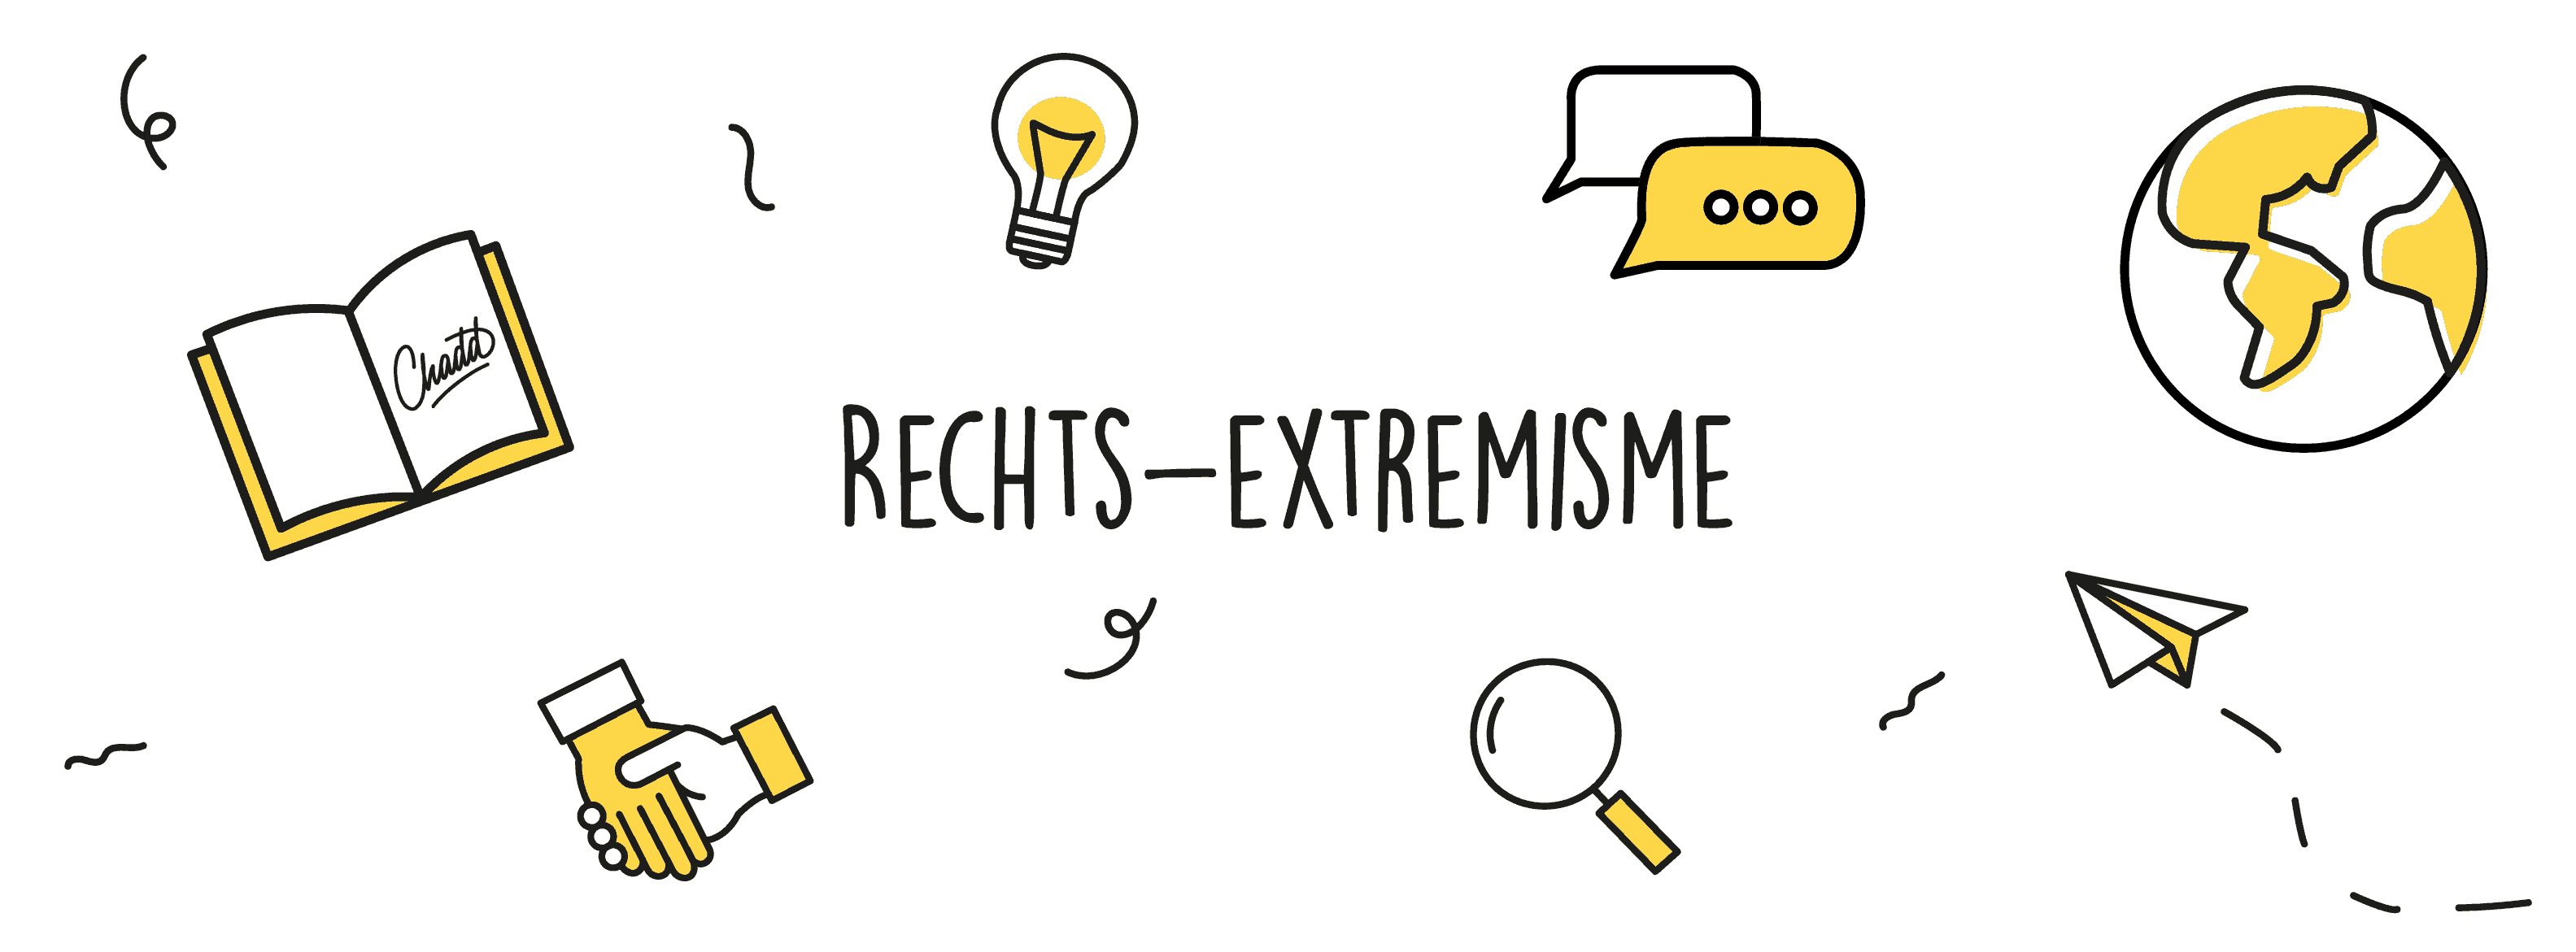 Rechts-extremisme